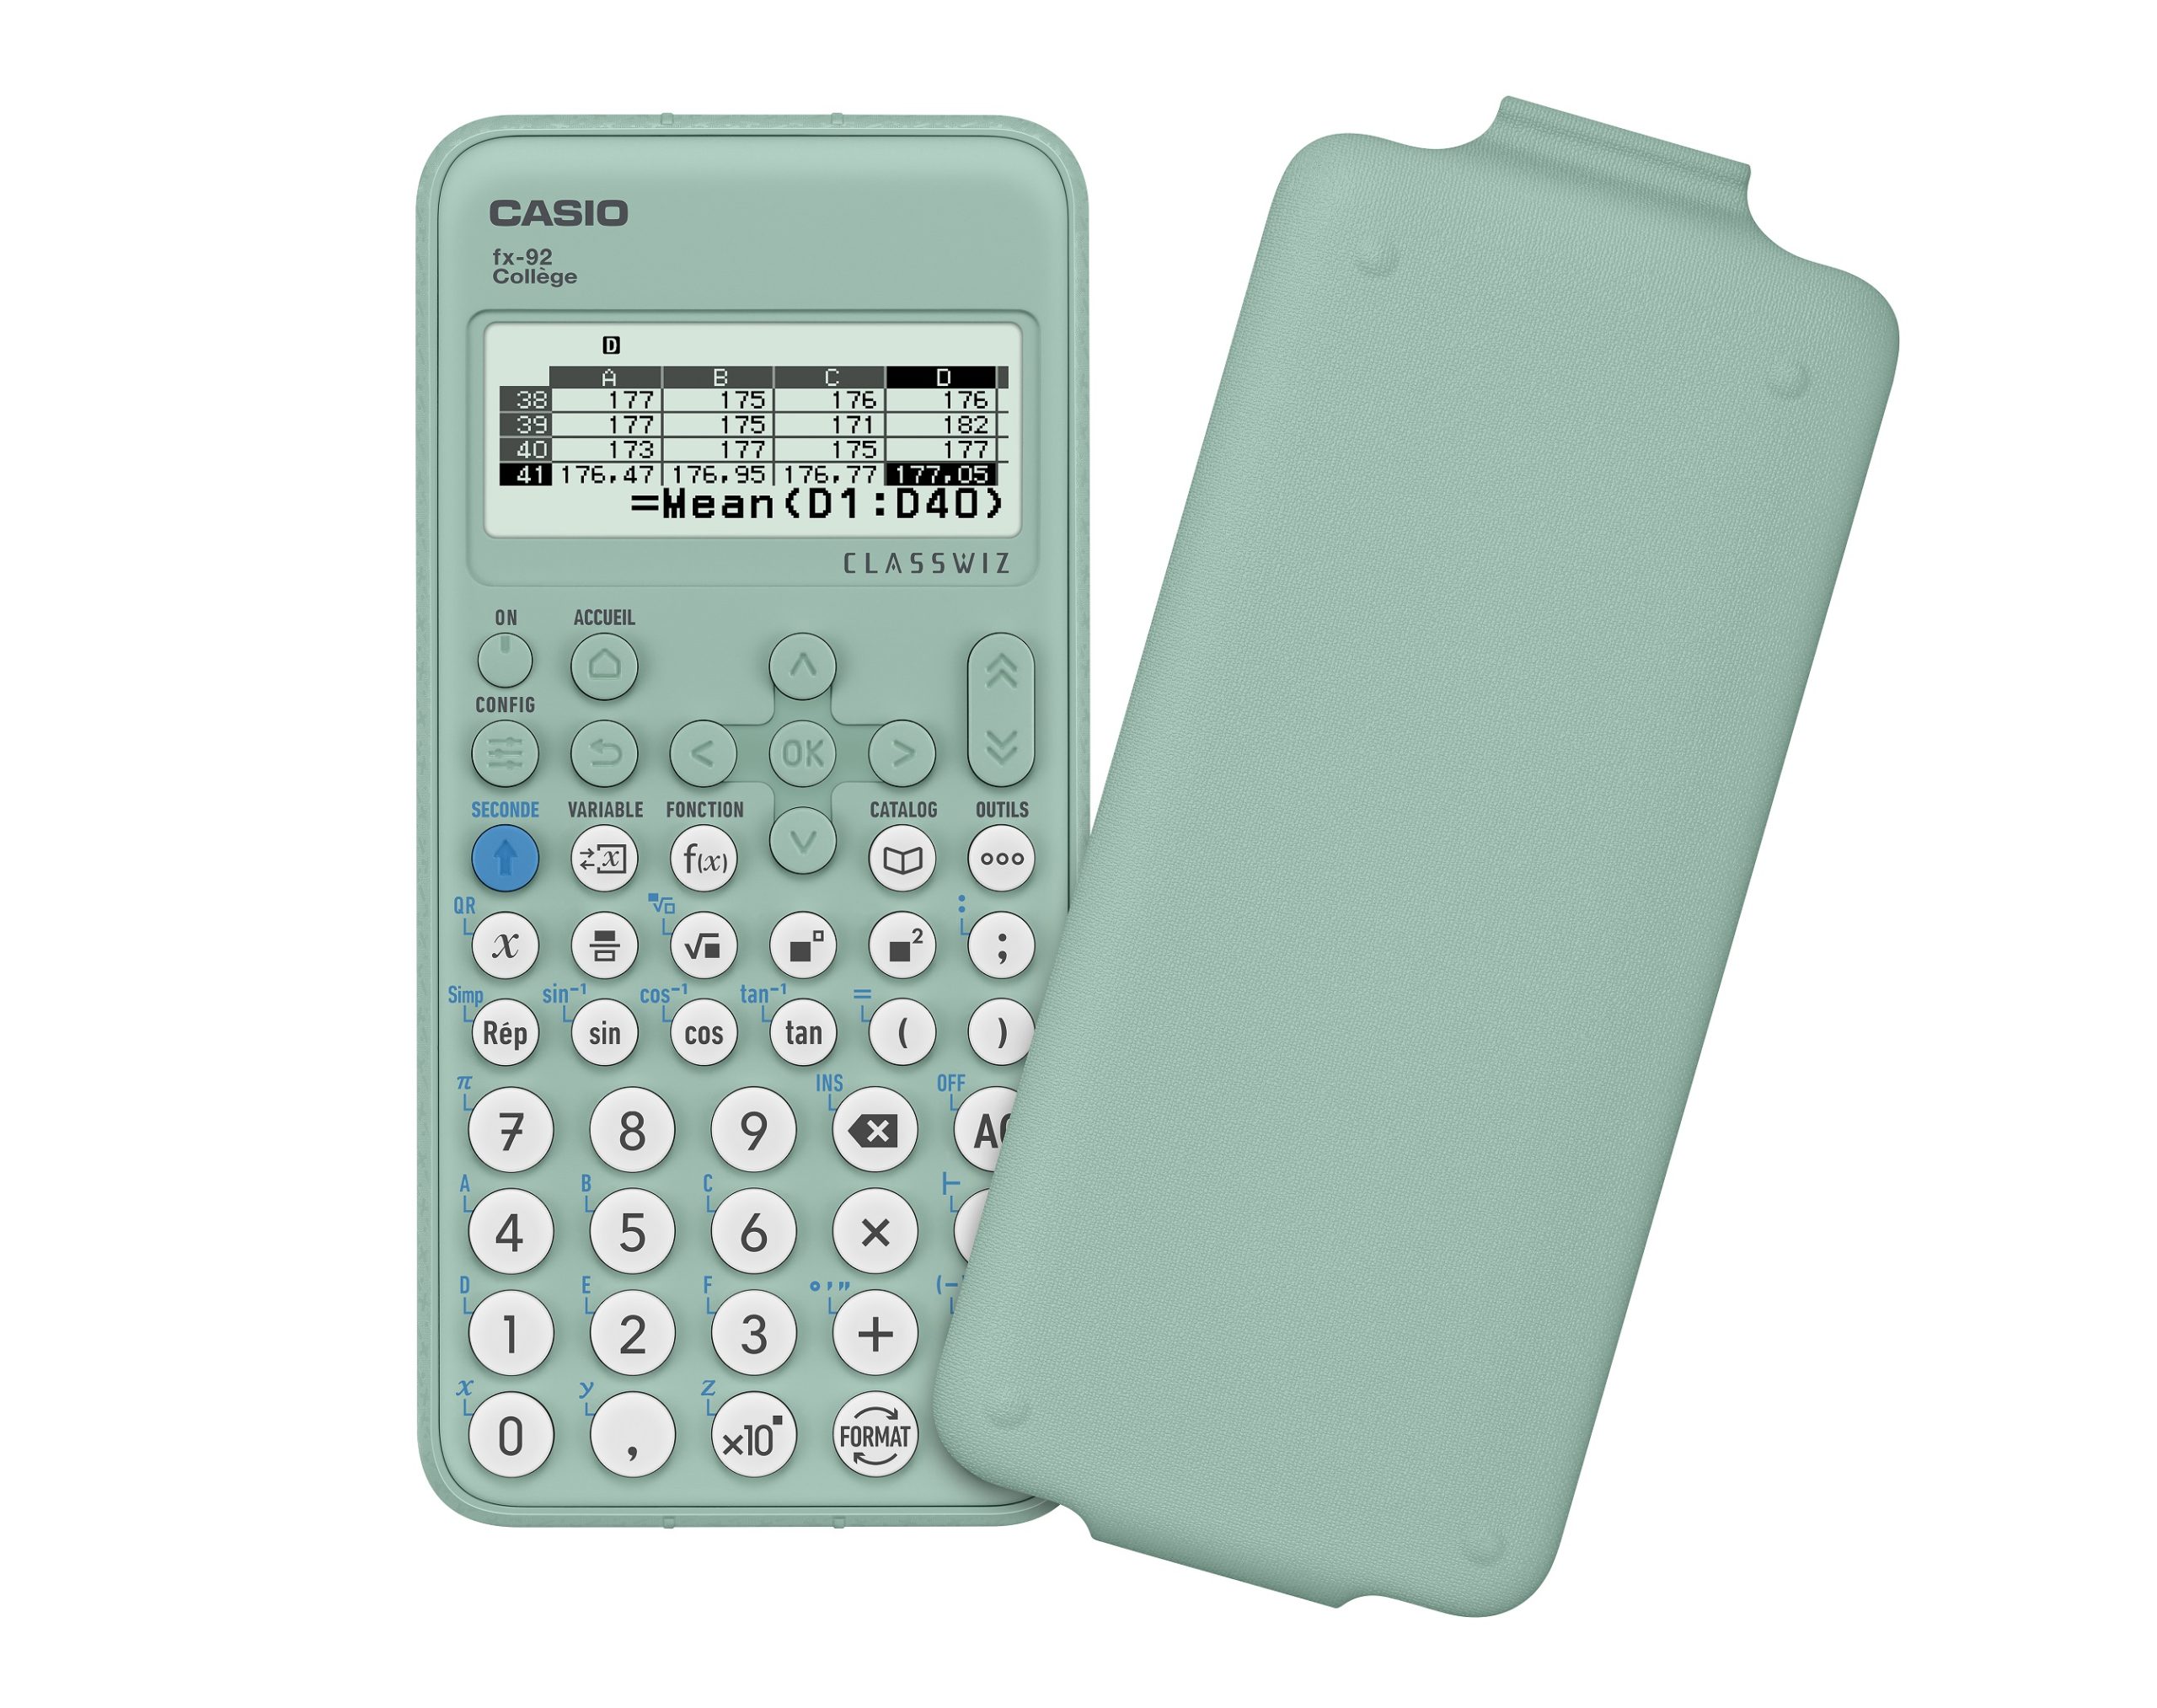 Casio - fx-92 College New +B - - Scientific calculator - Casio fx92 College  New +B -  - Casio pocket computer, calculator, game and  watch library. - RETRO CALCULATOR FX PB